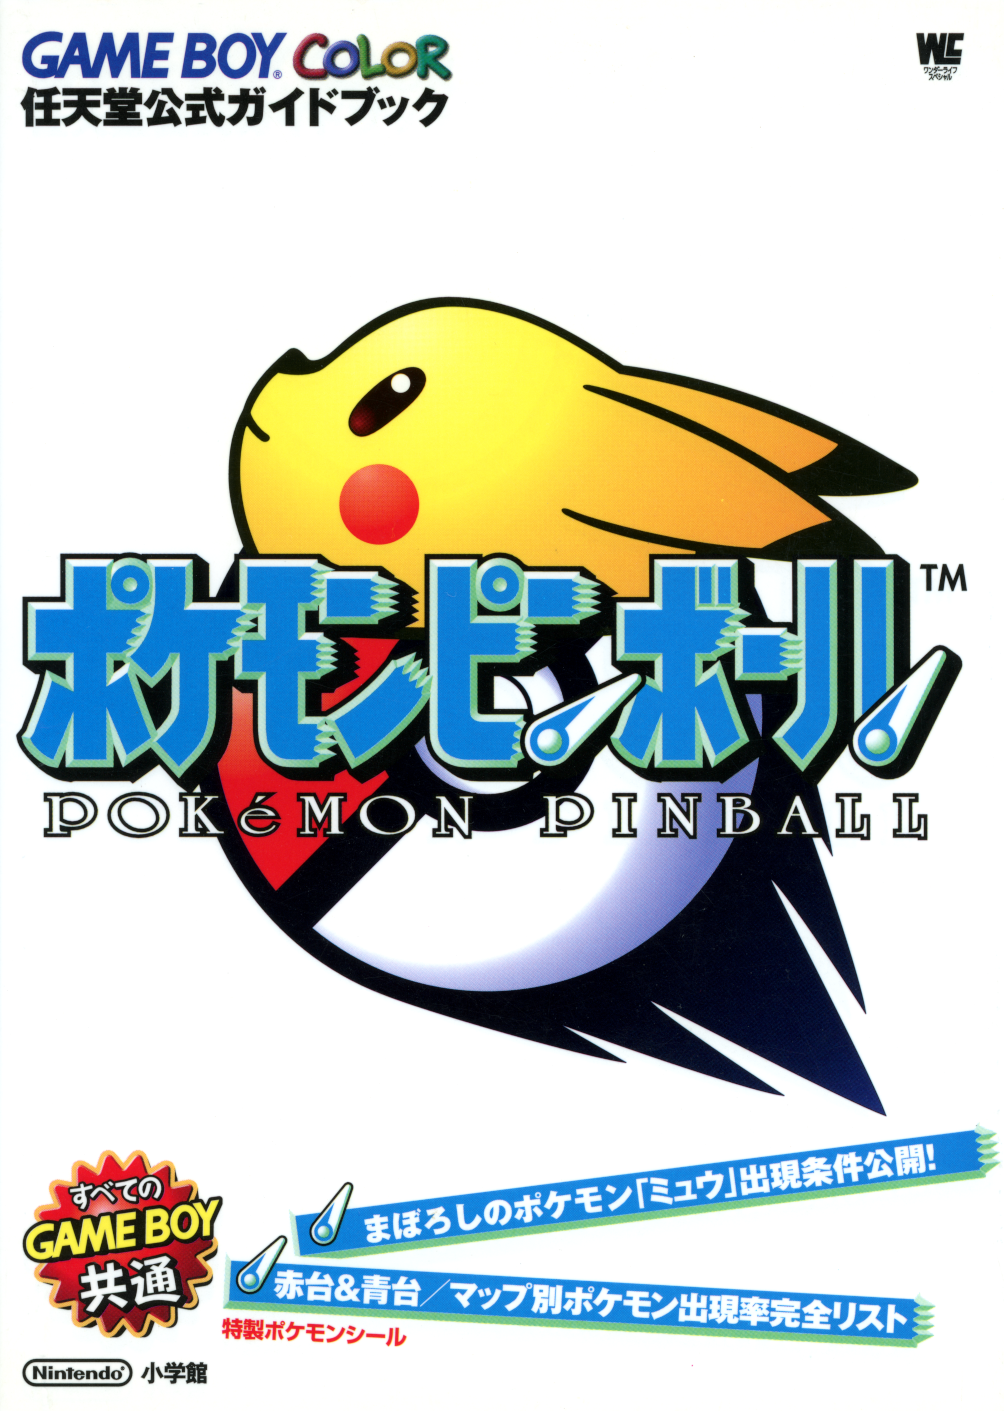 Pokédex (Pinball) - Bulbapedia, the community-driven Pokémon encyclopedia